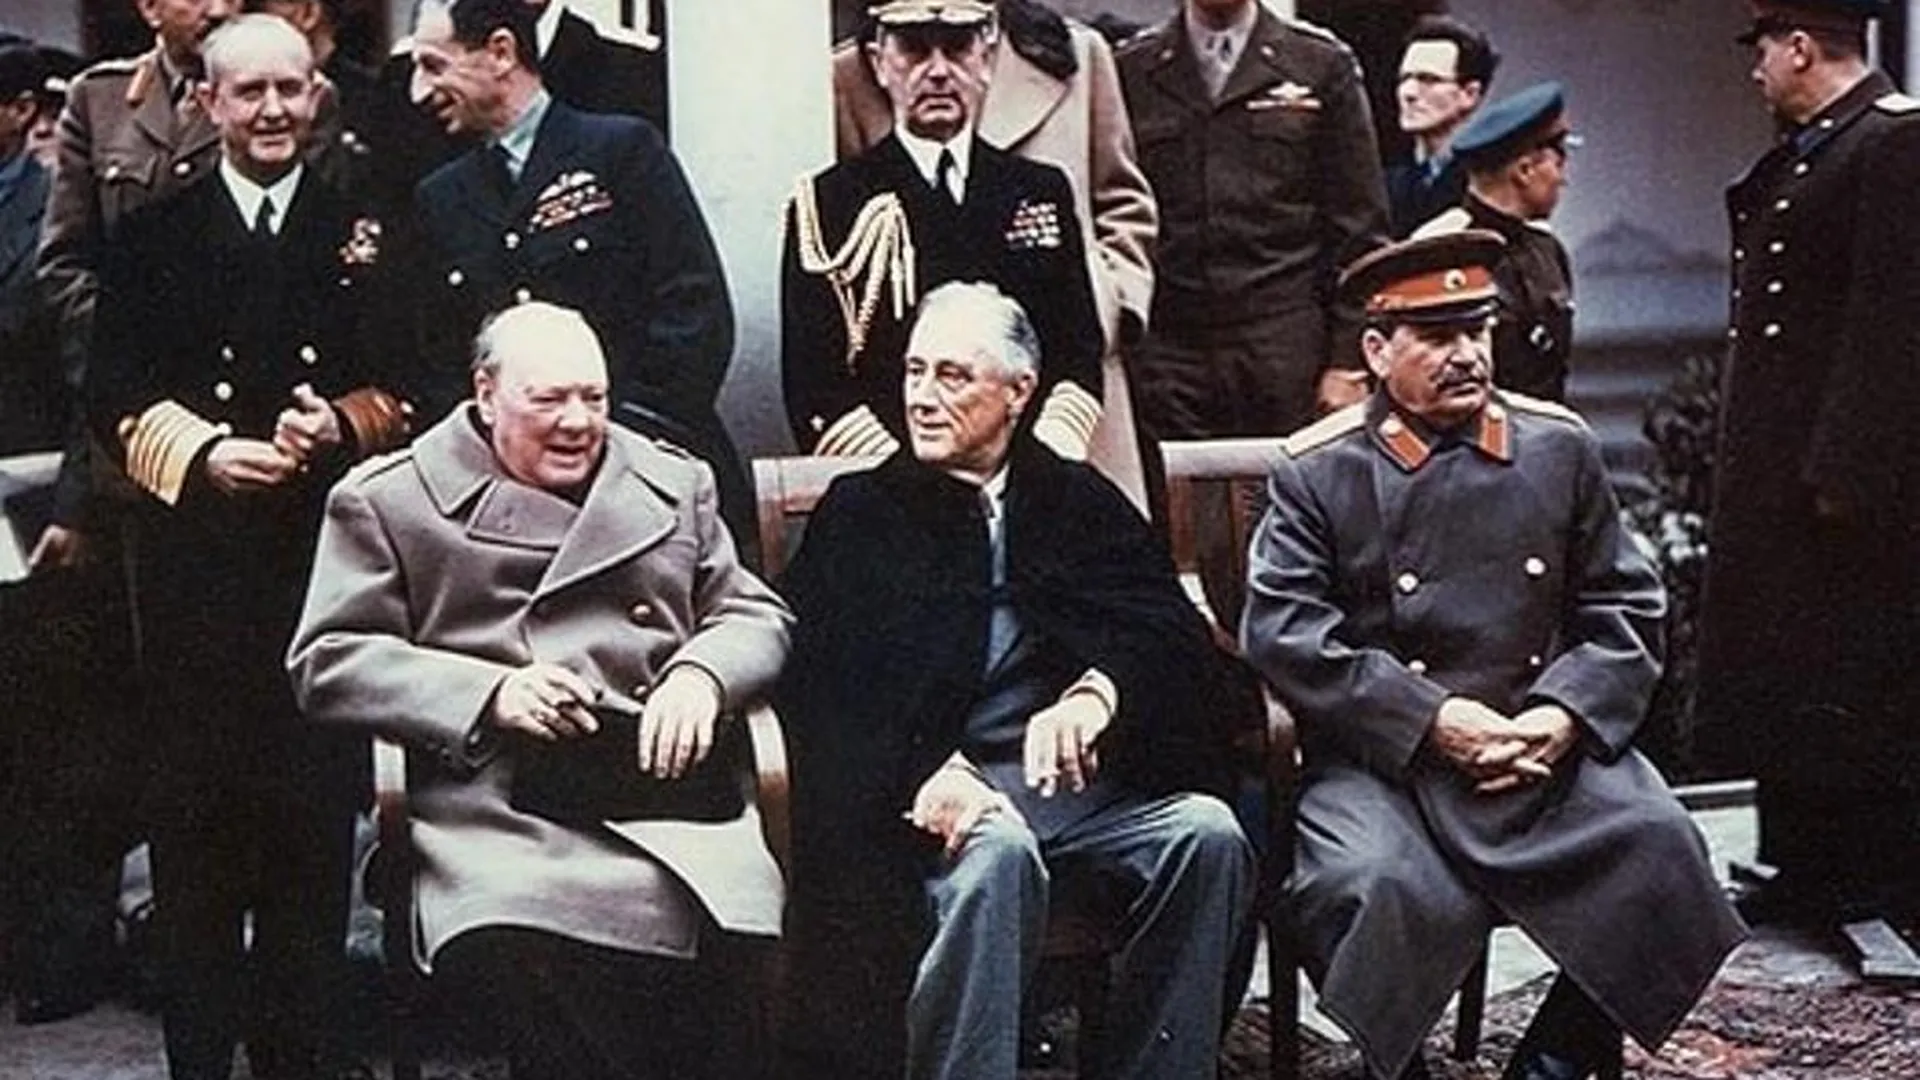 Уинстон Черчилль, Франклин Рузвельт (в центре) и Иосиф Сталин, Ялтинская конференция, 1945 год